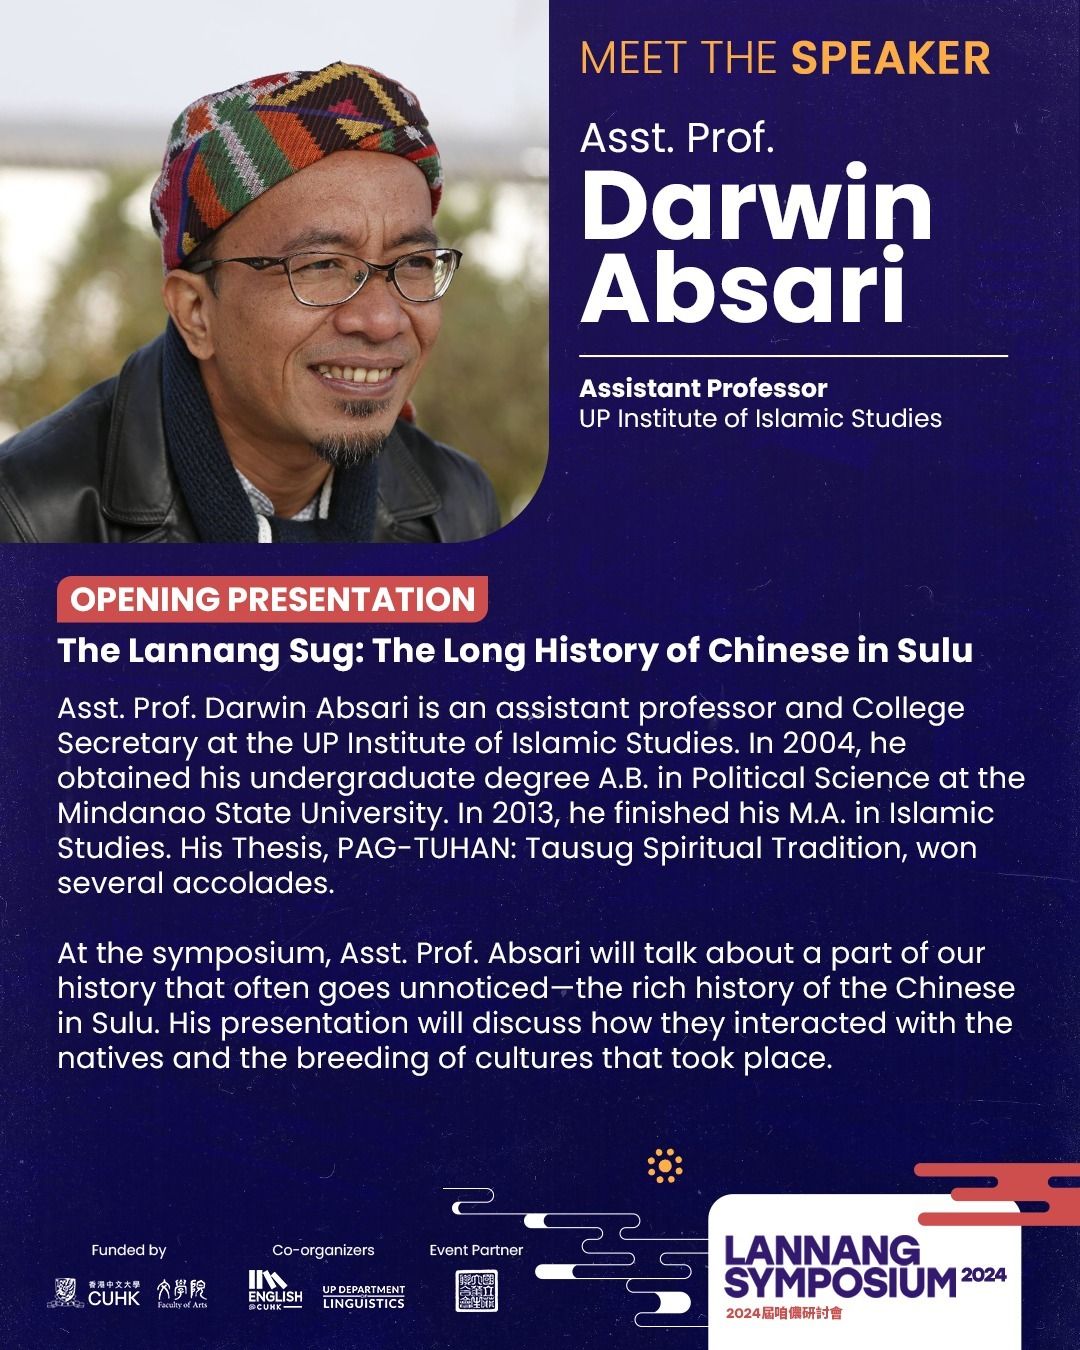 2024 Lannang Symposium - Prof Absari presenting "The Lannang Sug"